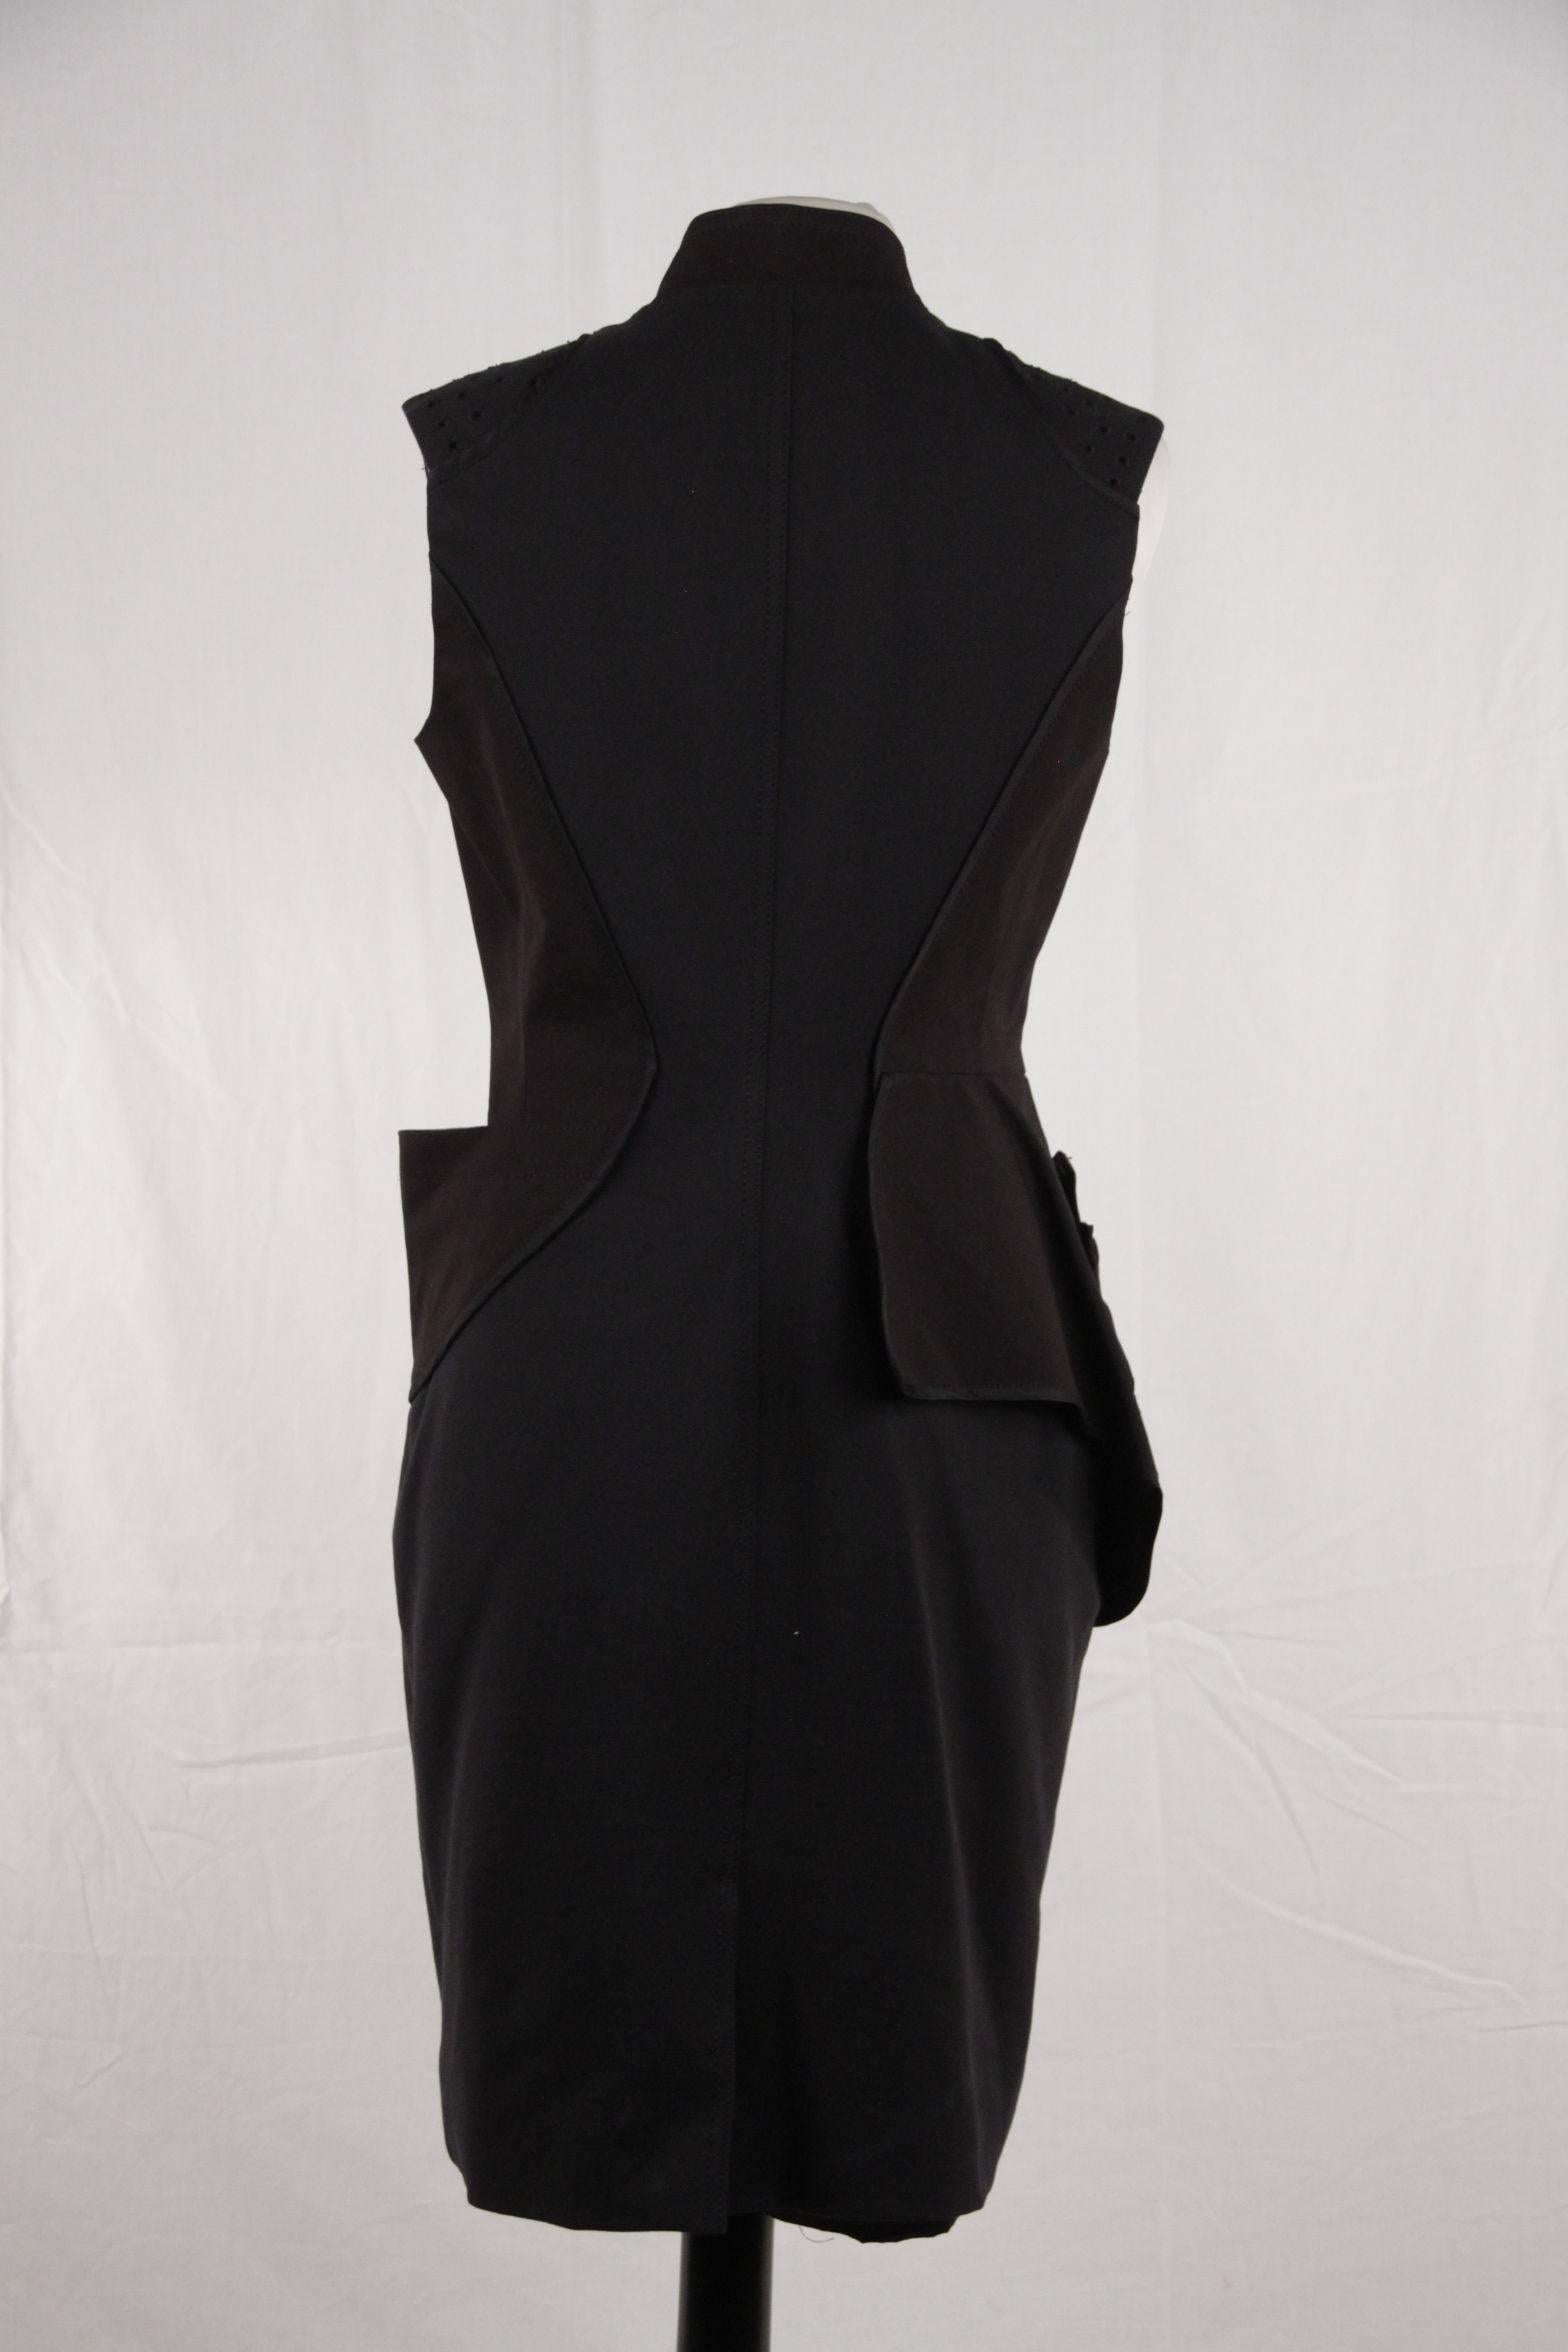 Women's  ZAC POSEN Black Cotton Blend PANELLED Sheath DRESS Size 4 